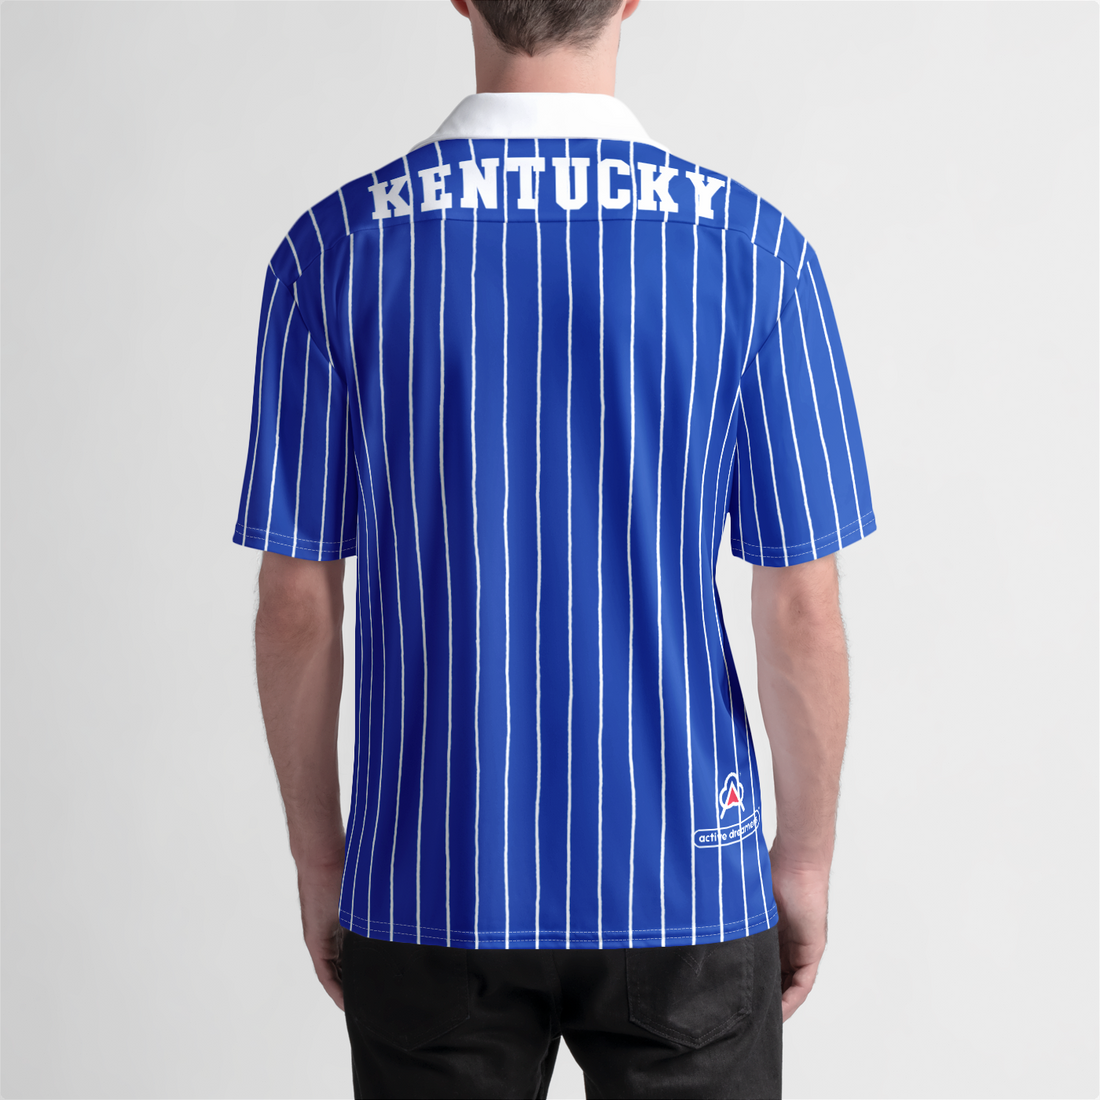 Kentucky Beach Shirt